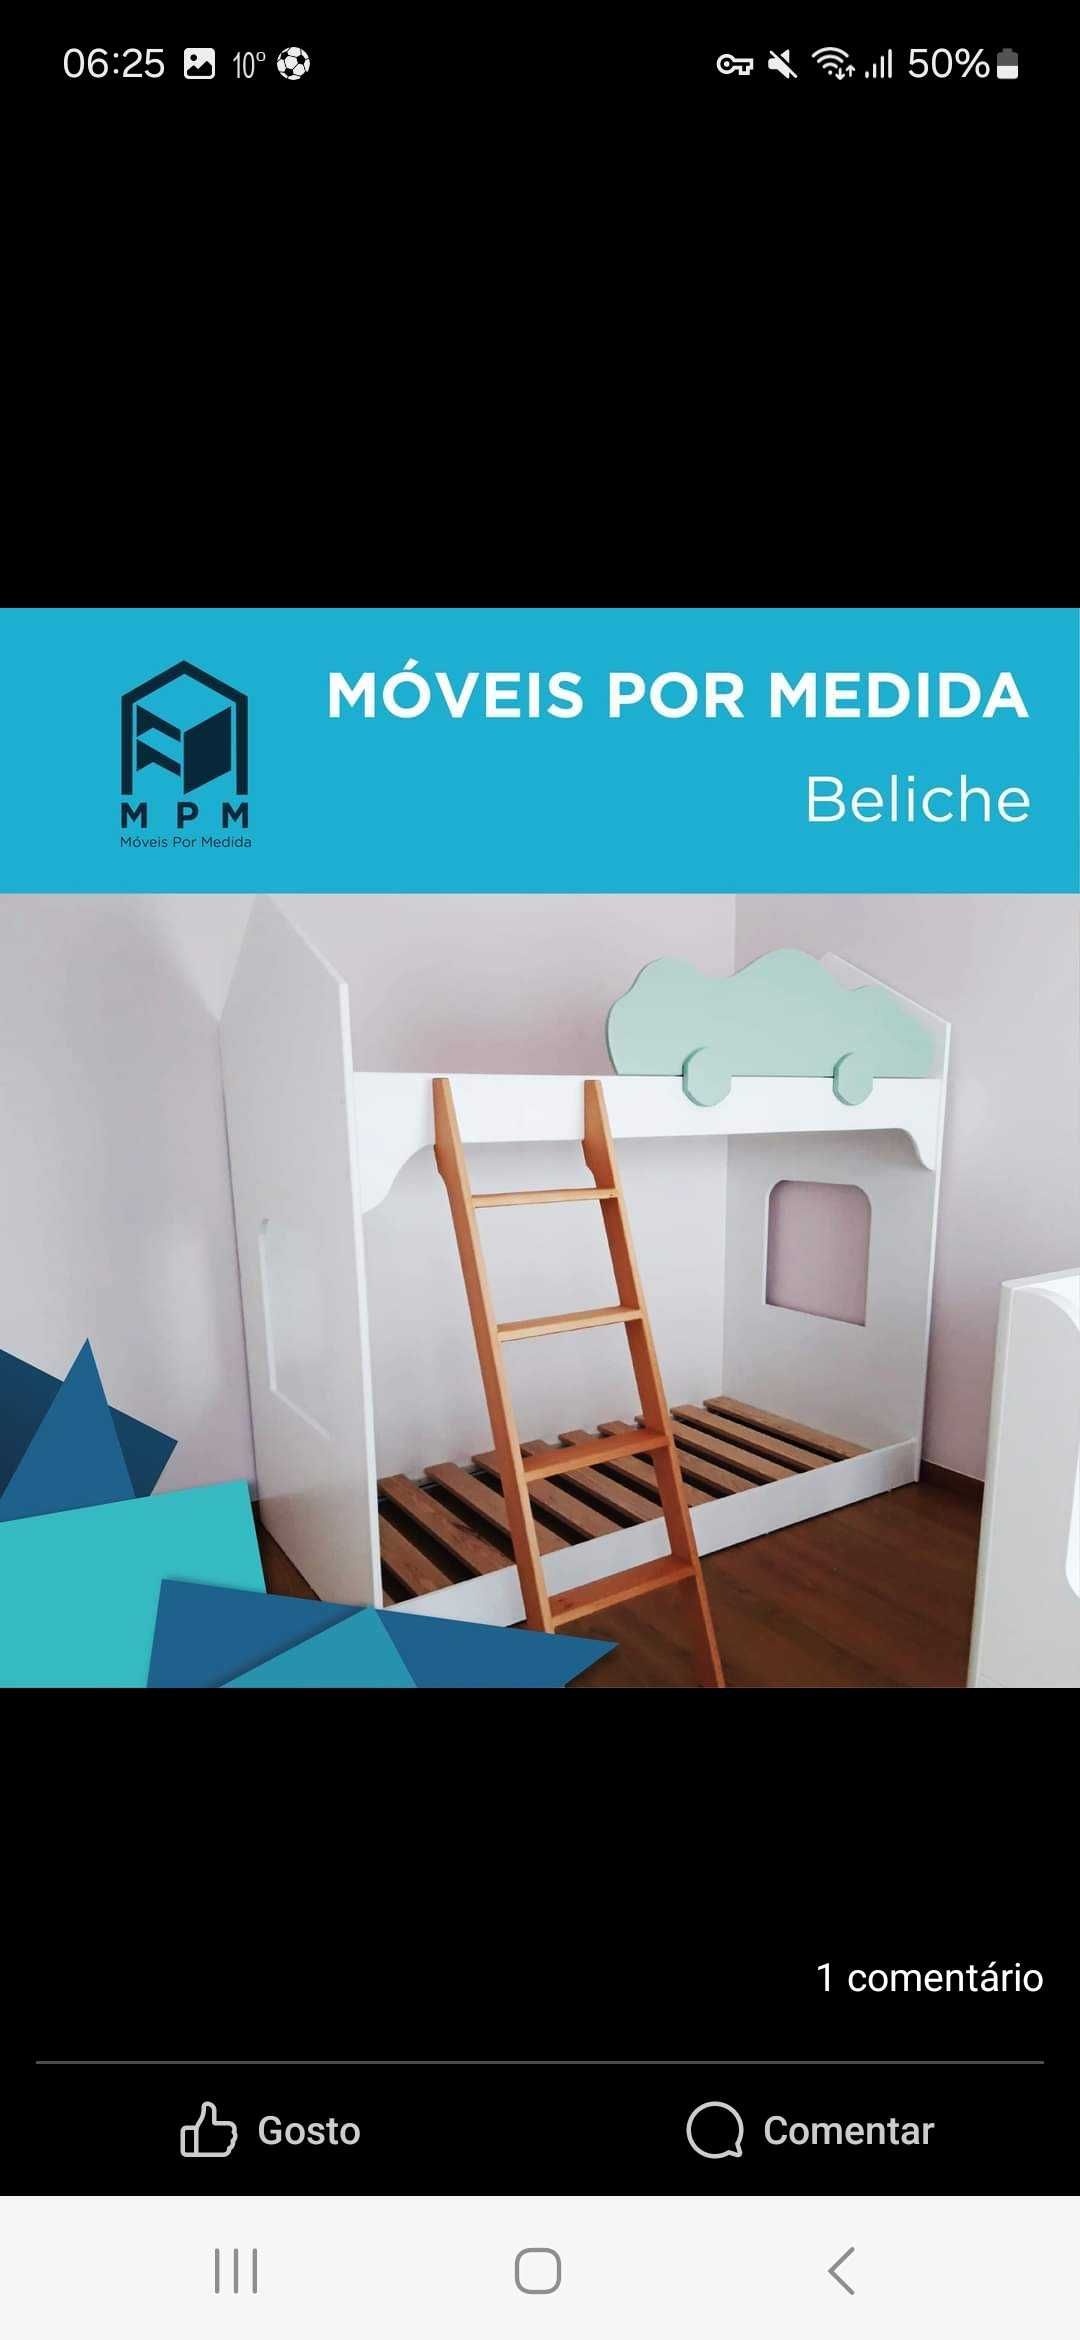 Beliche com 2 camas em forma de casa para crianças